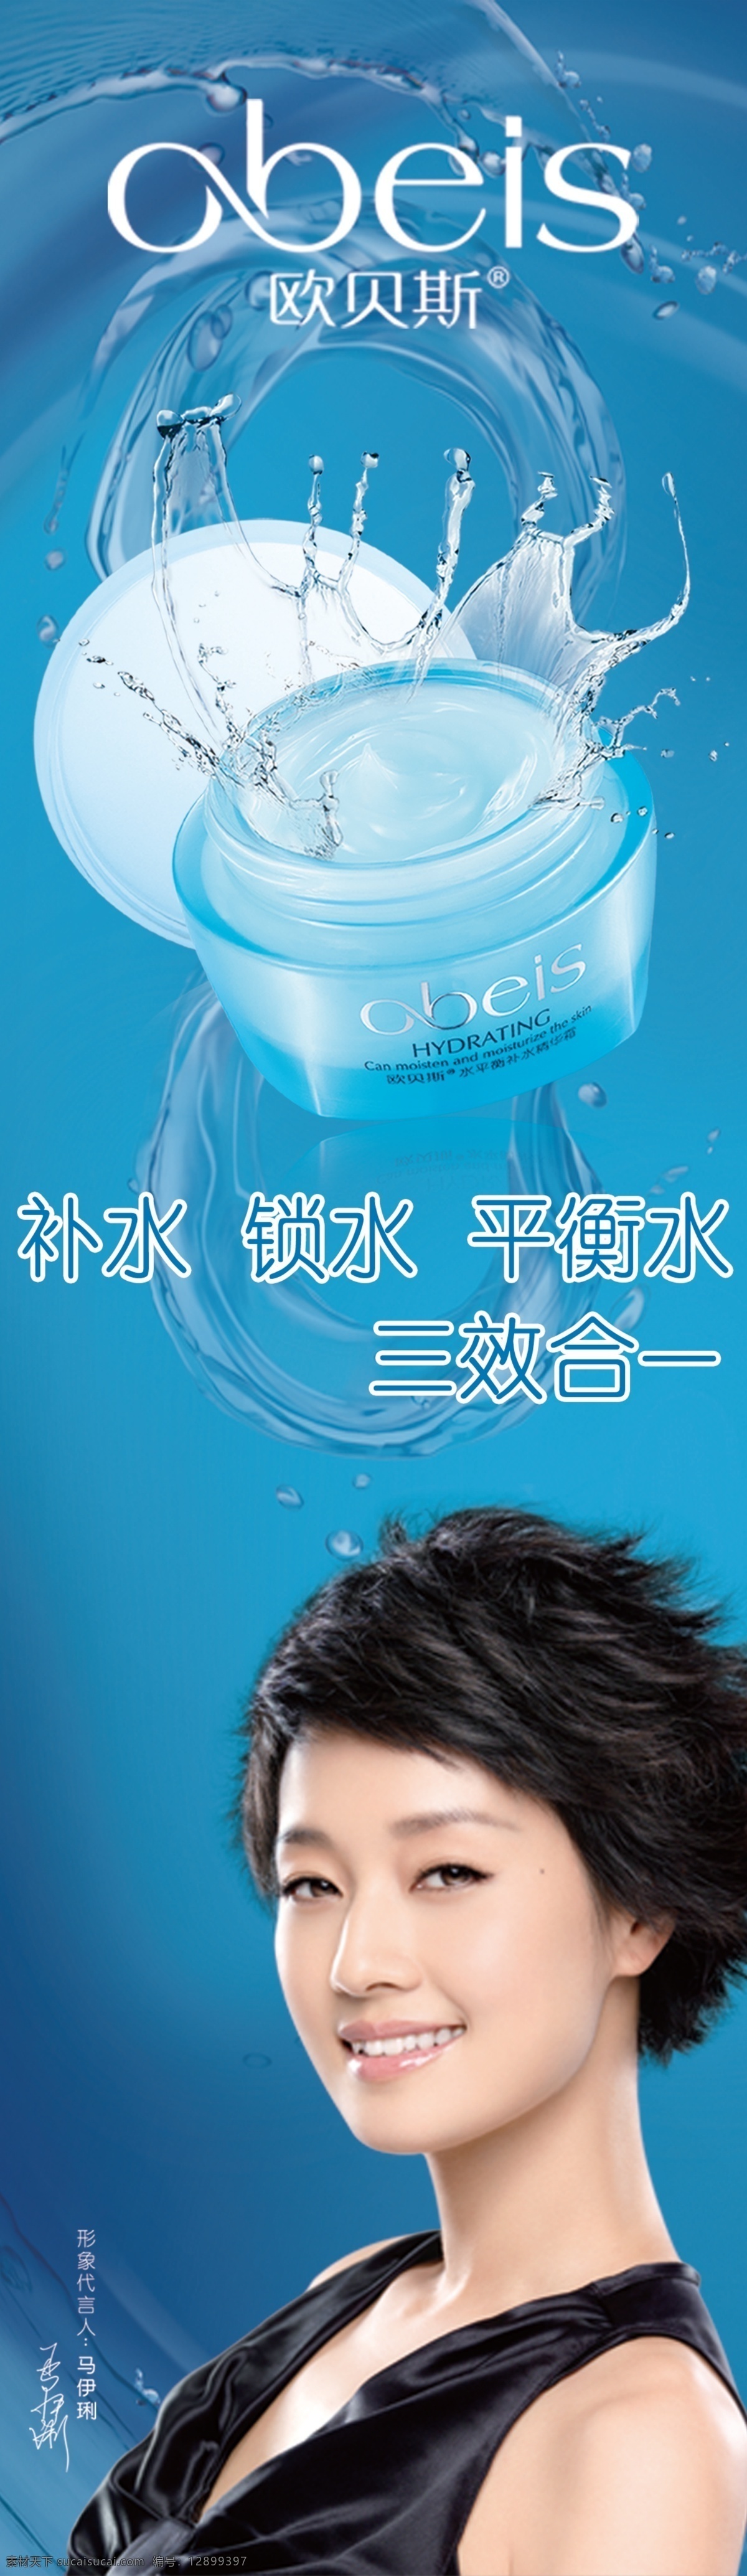 欧 贝斯 化妆品 海报 欧贝斯标志 蓝色 三效合一 马伊琍 广告设计模板 源文件